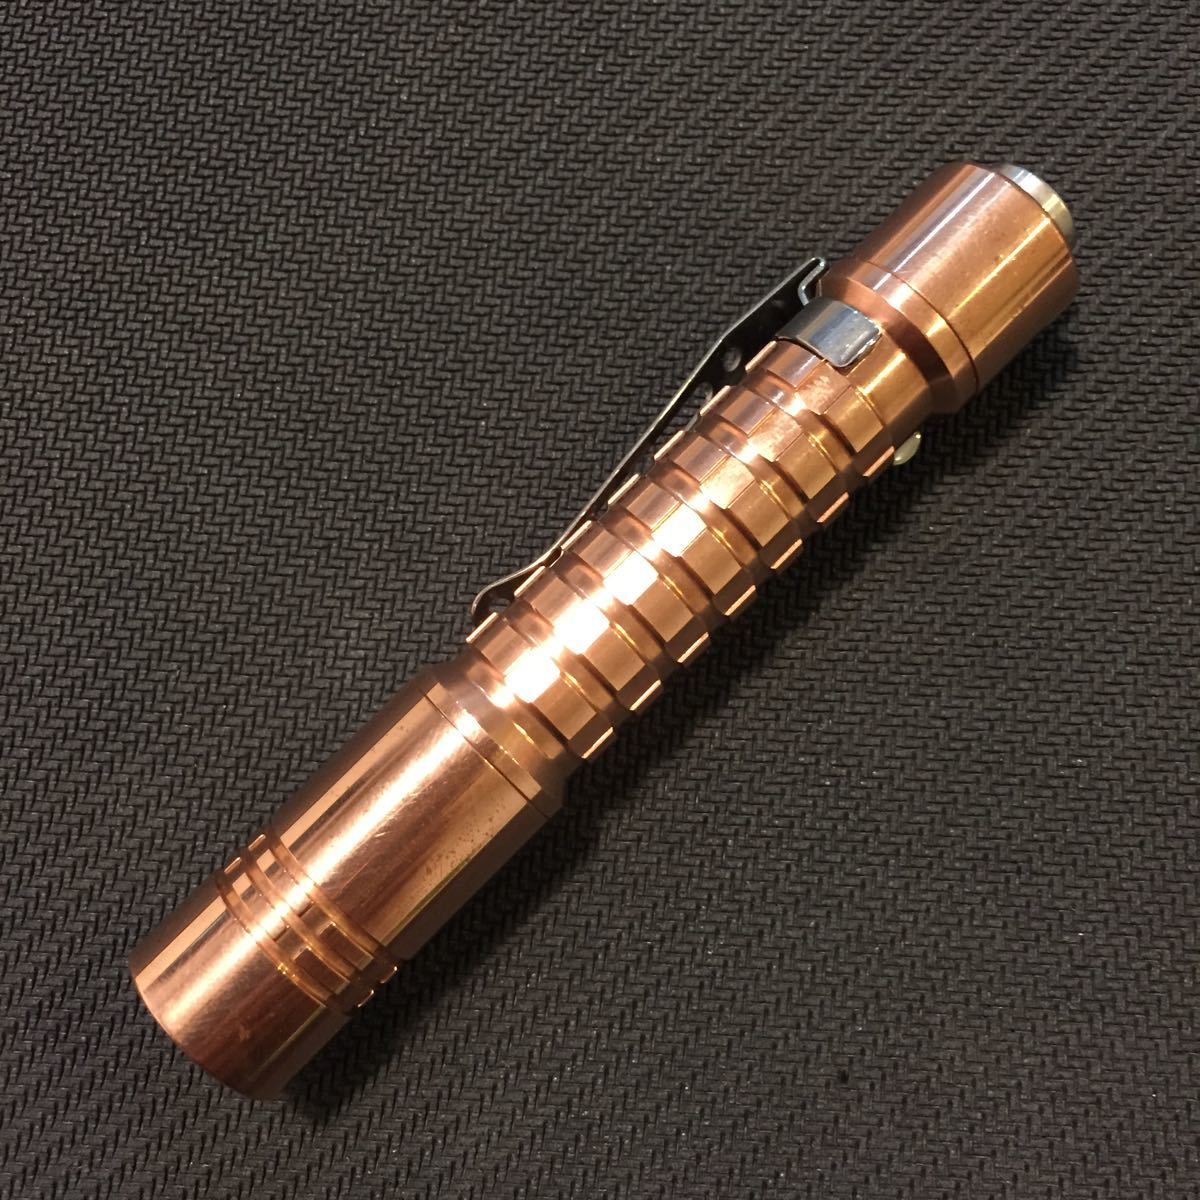 ReyLight copper AAA 10440 kit 検)flashlight